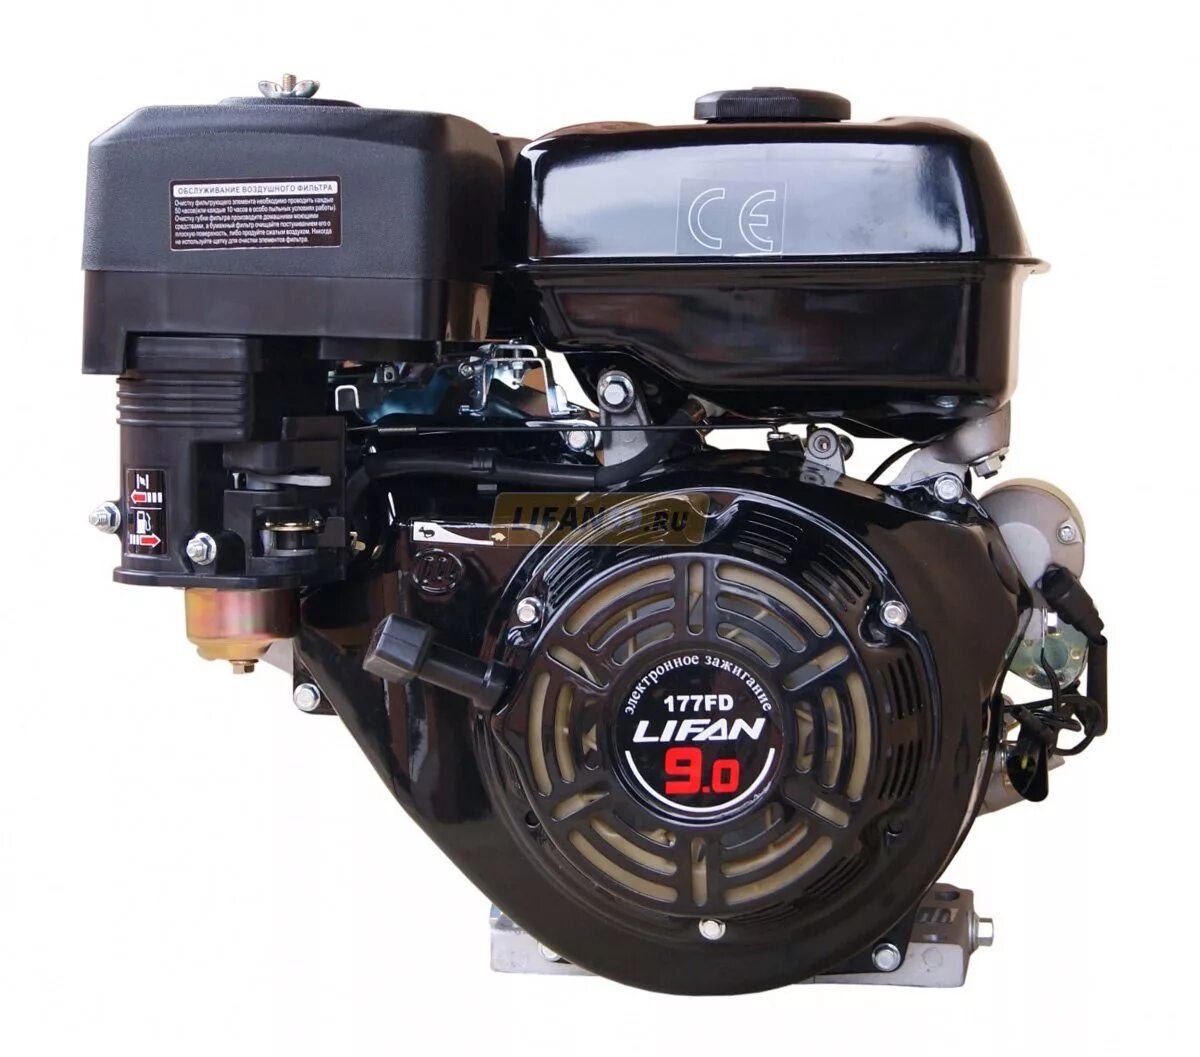 Двигатель лифан стартером купить двигатель. Двигатель Lifan 177fd. Двигатель бензиновый Lifan 177f (9 л.с.). Лифан 177fd. Двигатель Лифан 177fd 9 л.с с электростартером.